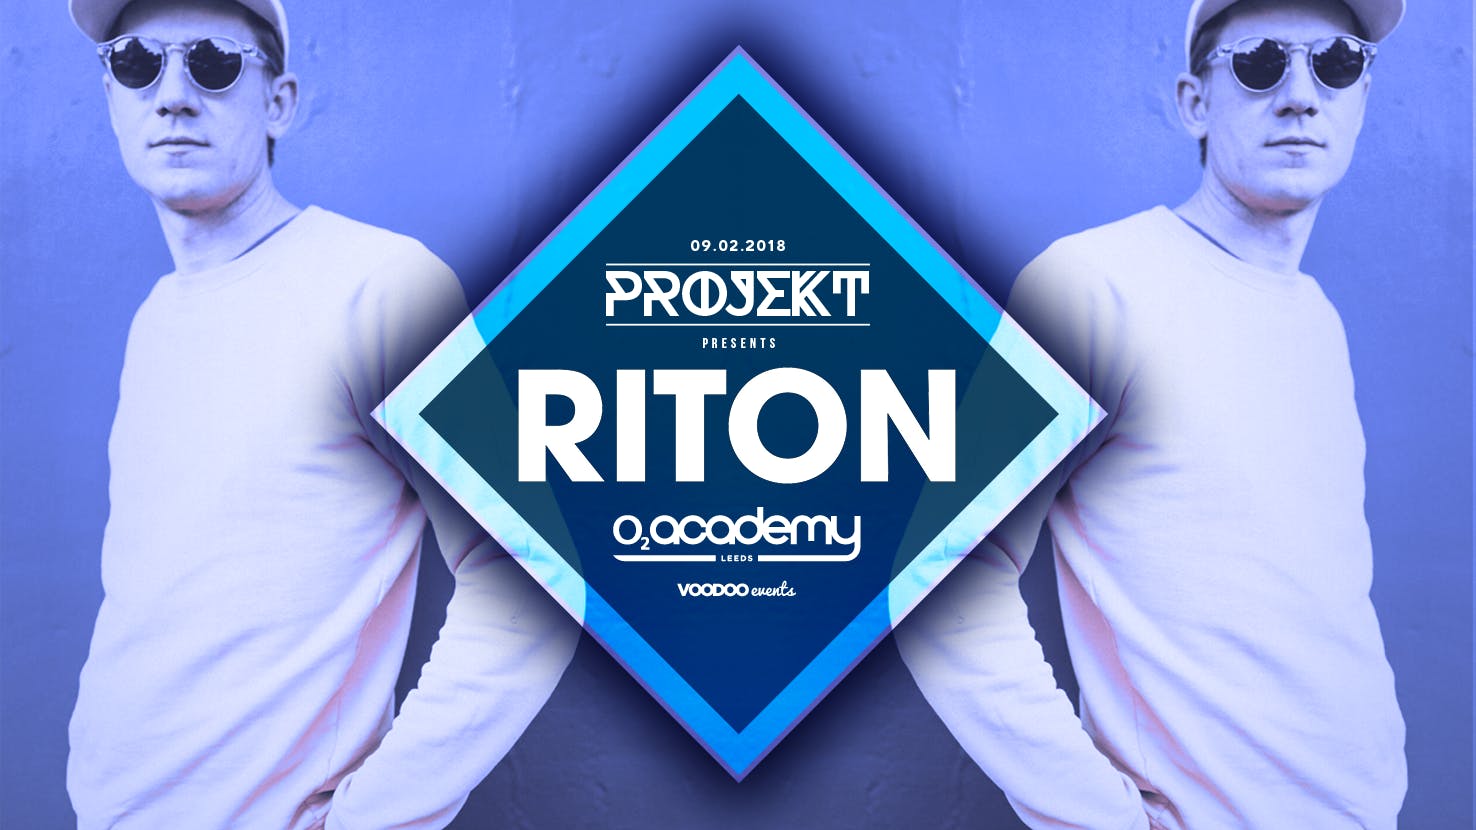 Projekt presents Riton